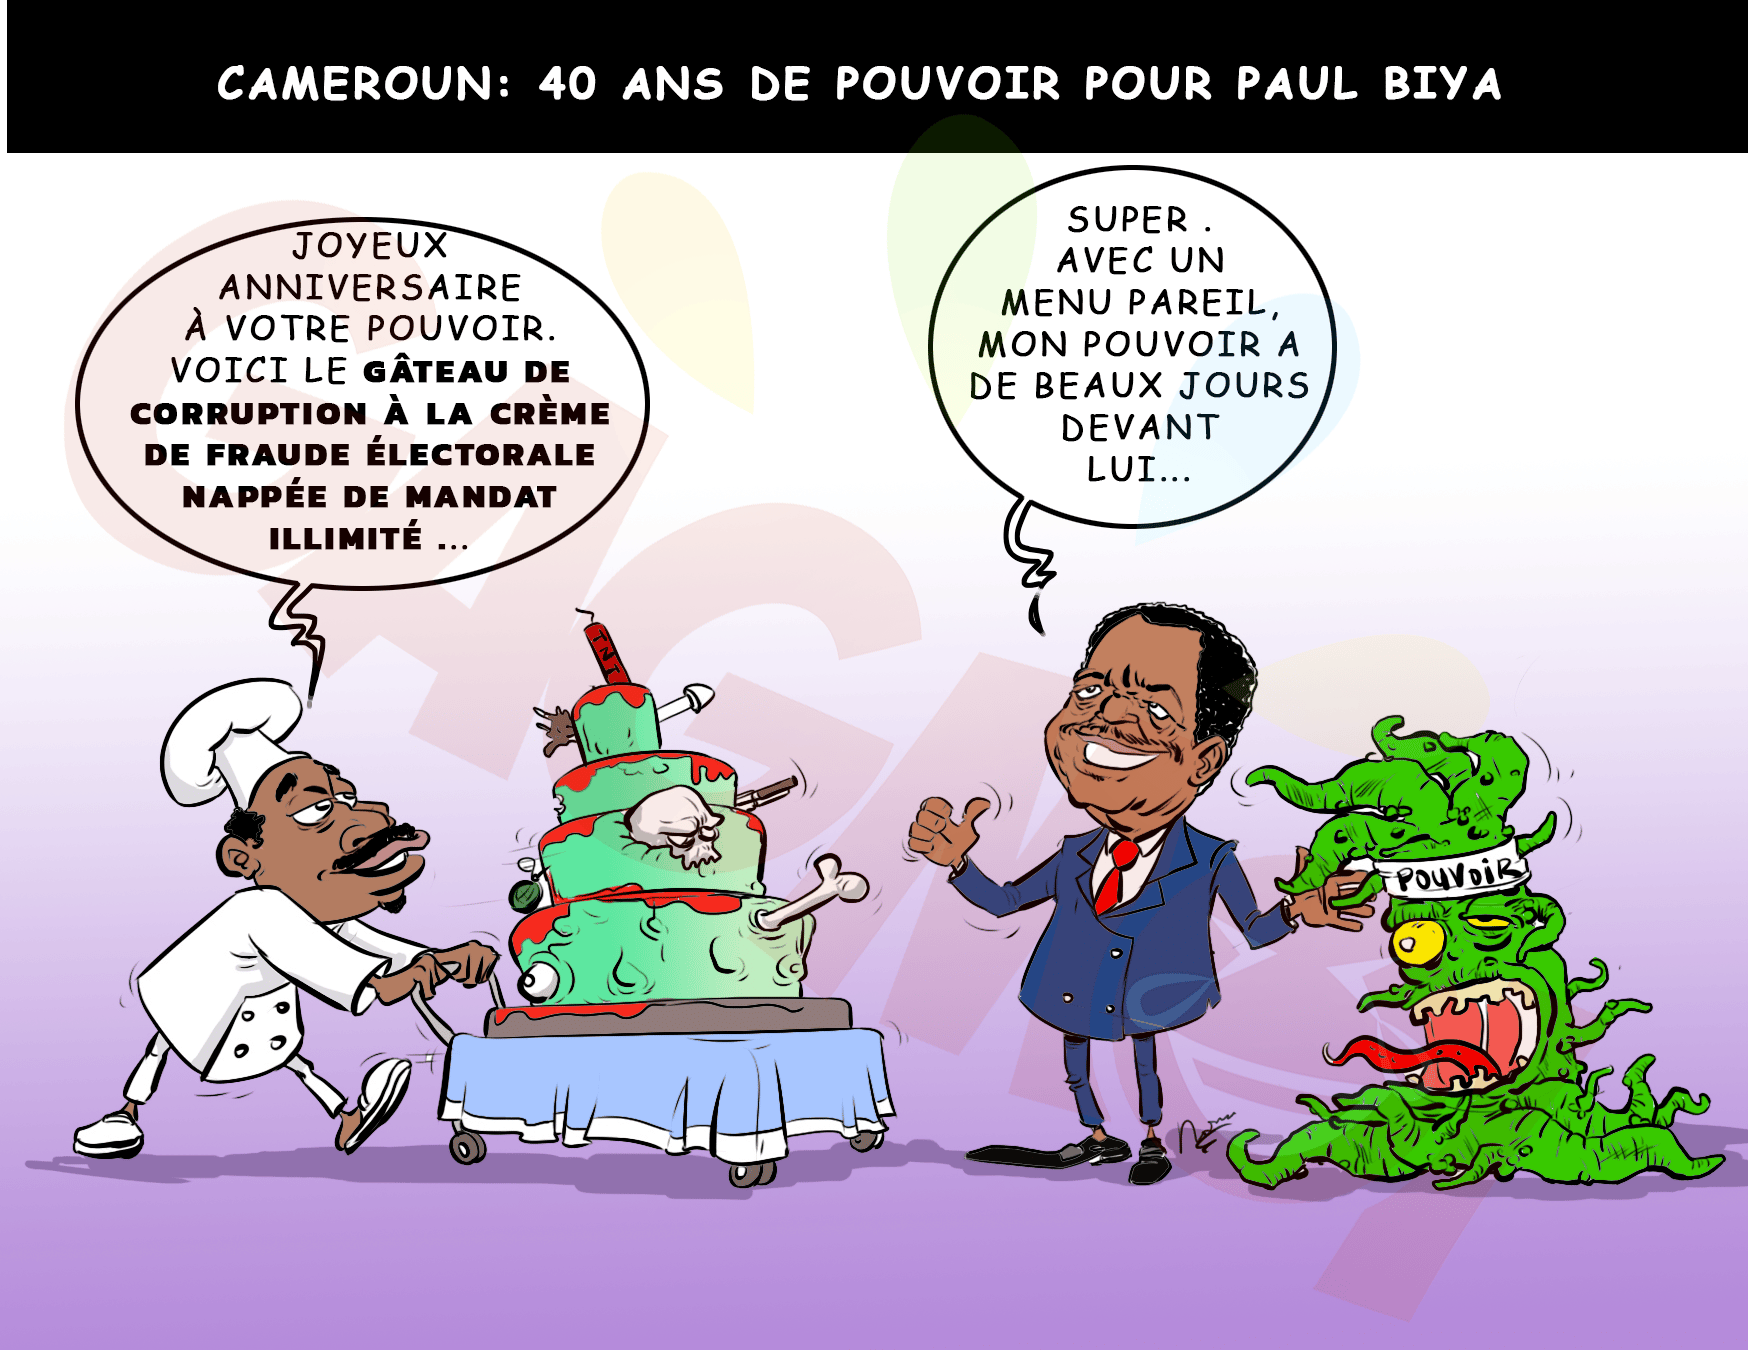 Cameroun #Paul biya #dictature#longevité pouvoir# actualité politique Afrique#dessin humour Afrique